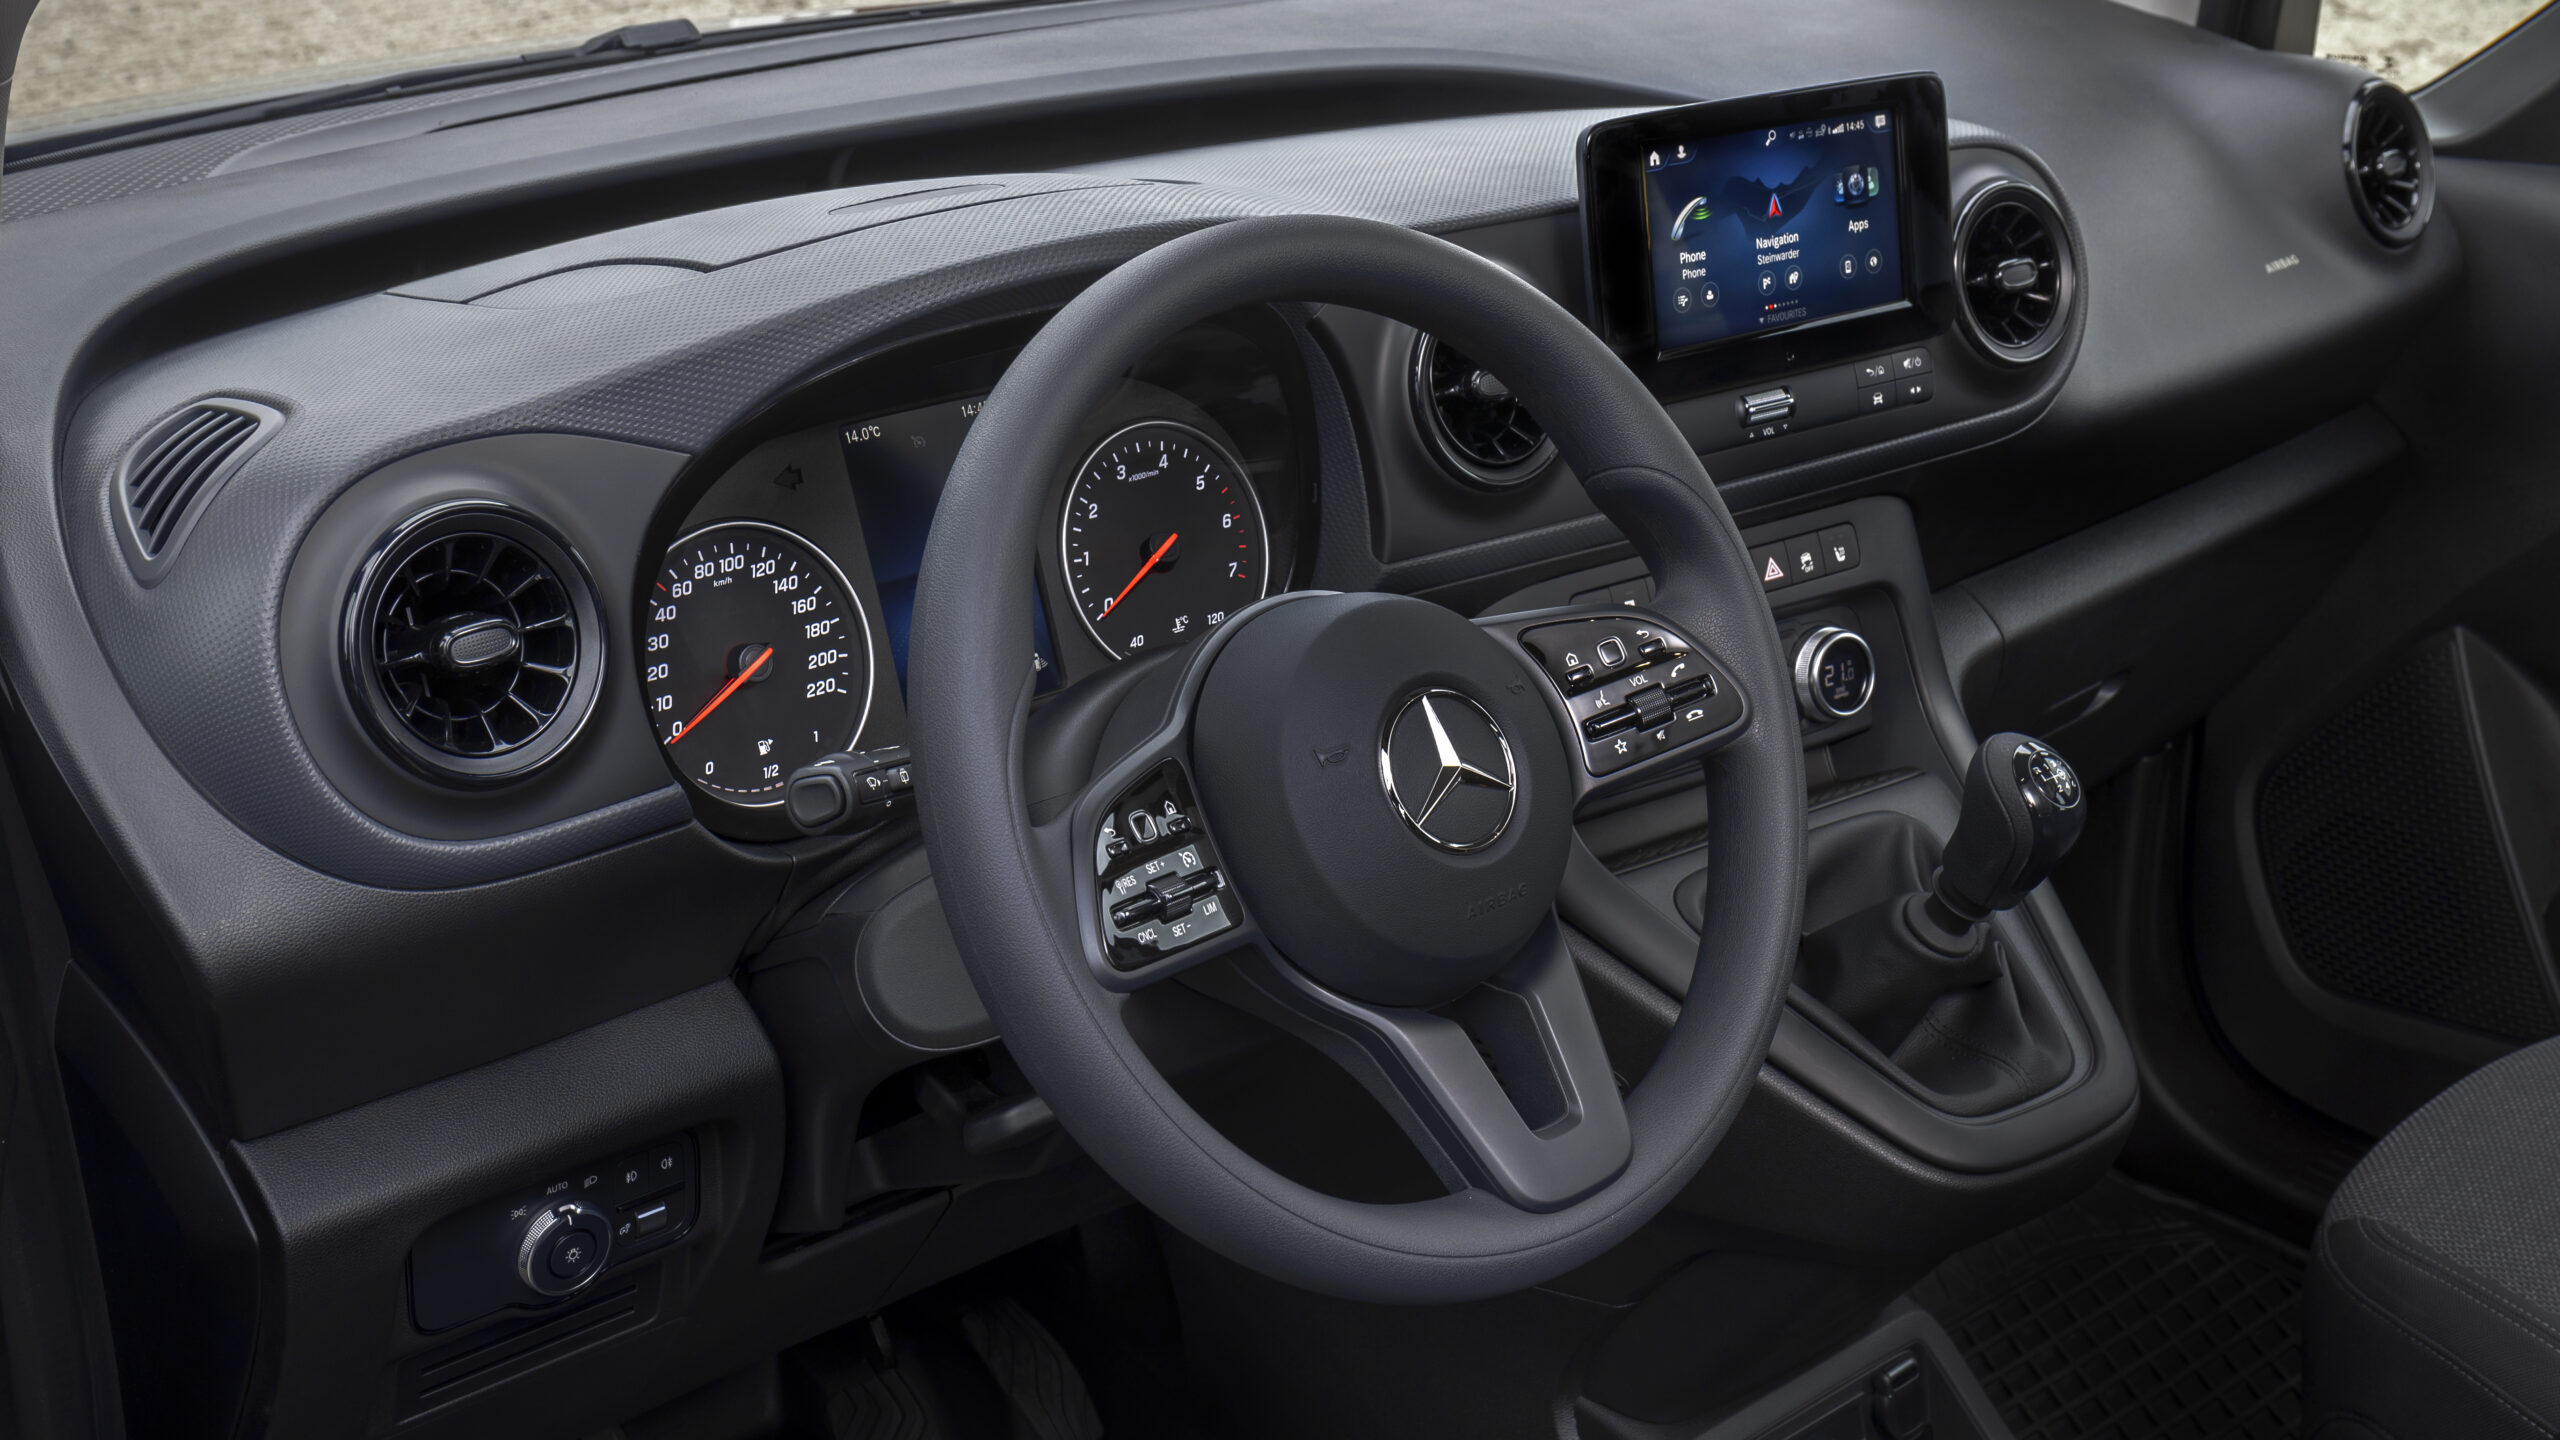 Mercedes-Benz Citan International van of the Year 2022 TIR transNews